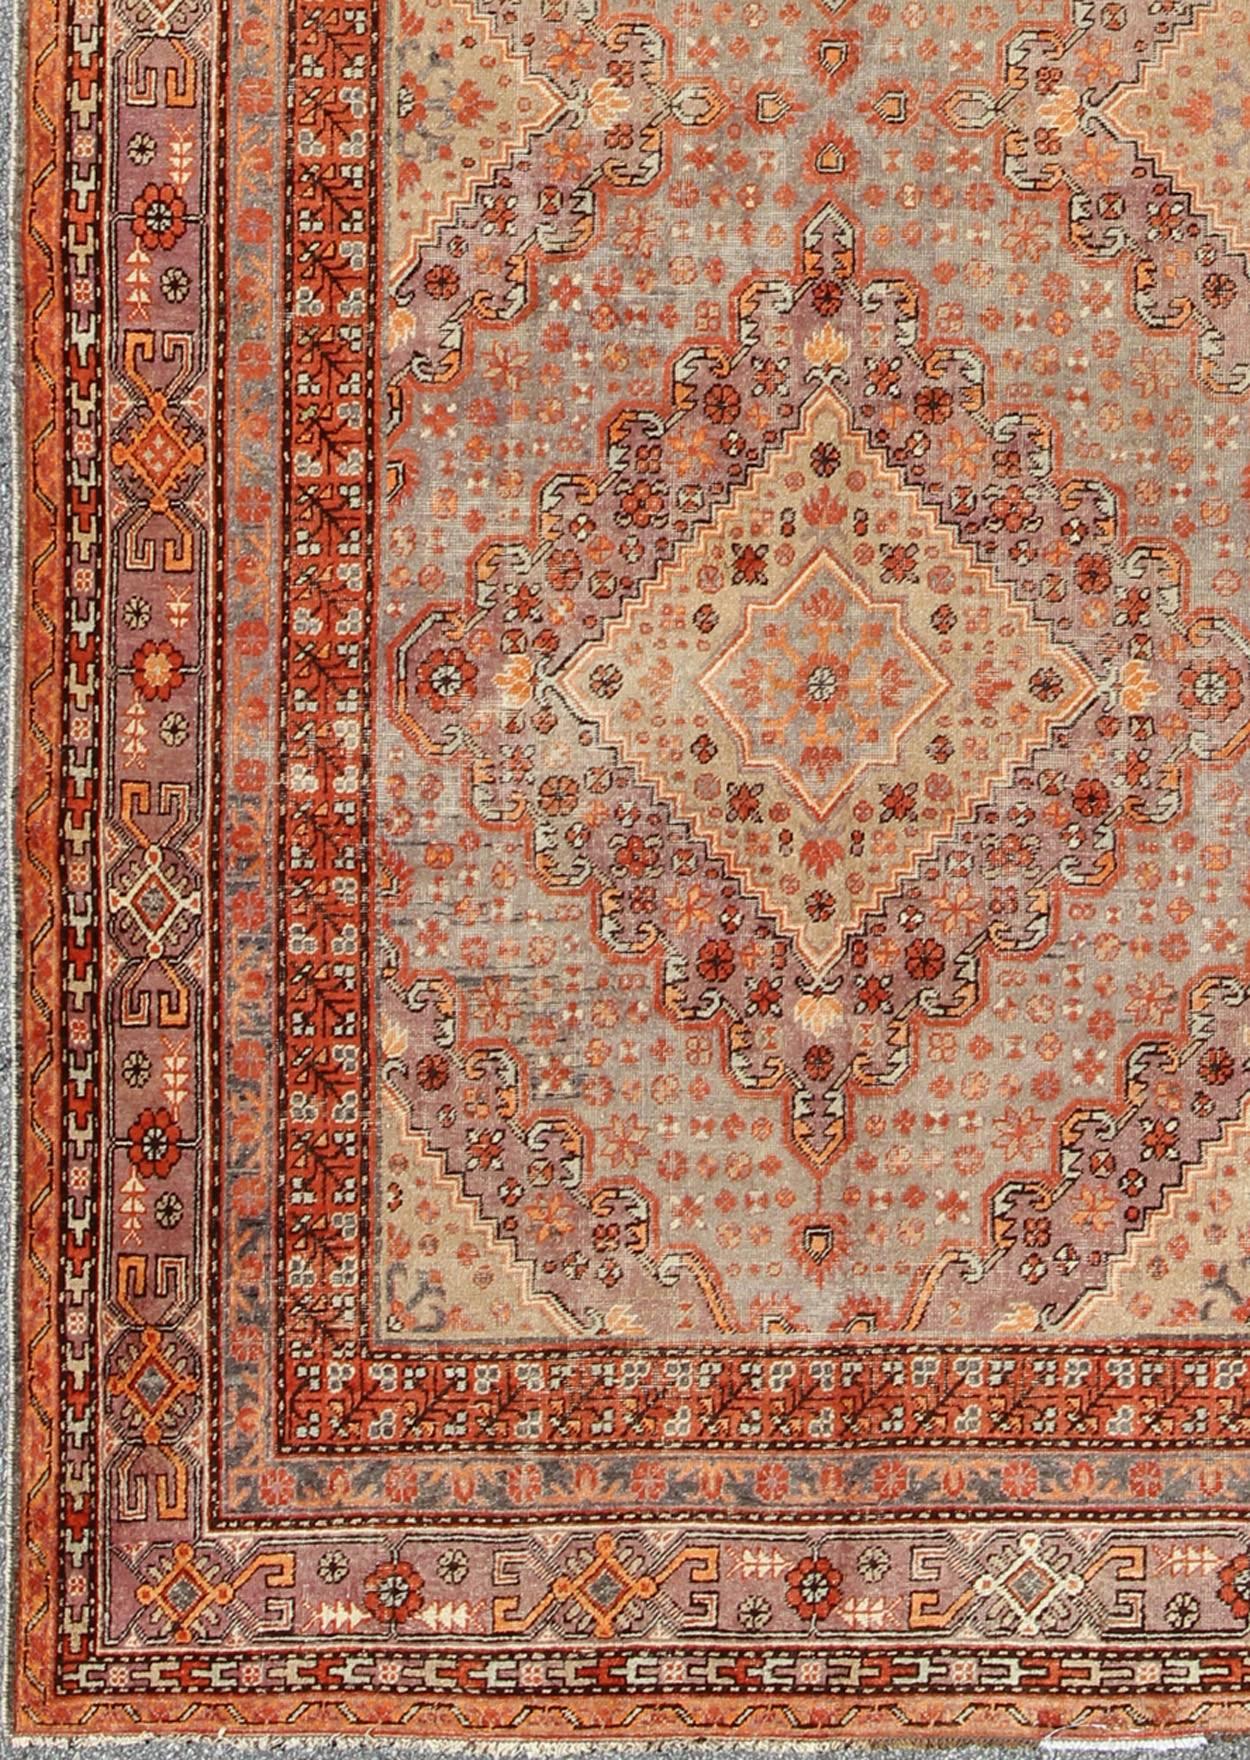 Tapis antique Khotan/Samarkand en gris, lavande et rouille  et Vert clair
Ce tapis antique Khotan au rendu délicat a été fabriqué à la main au Turkestan au début du XXe siècle. Il présente un motif subgéométrique complexe avec des médaillons